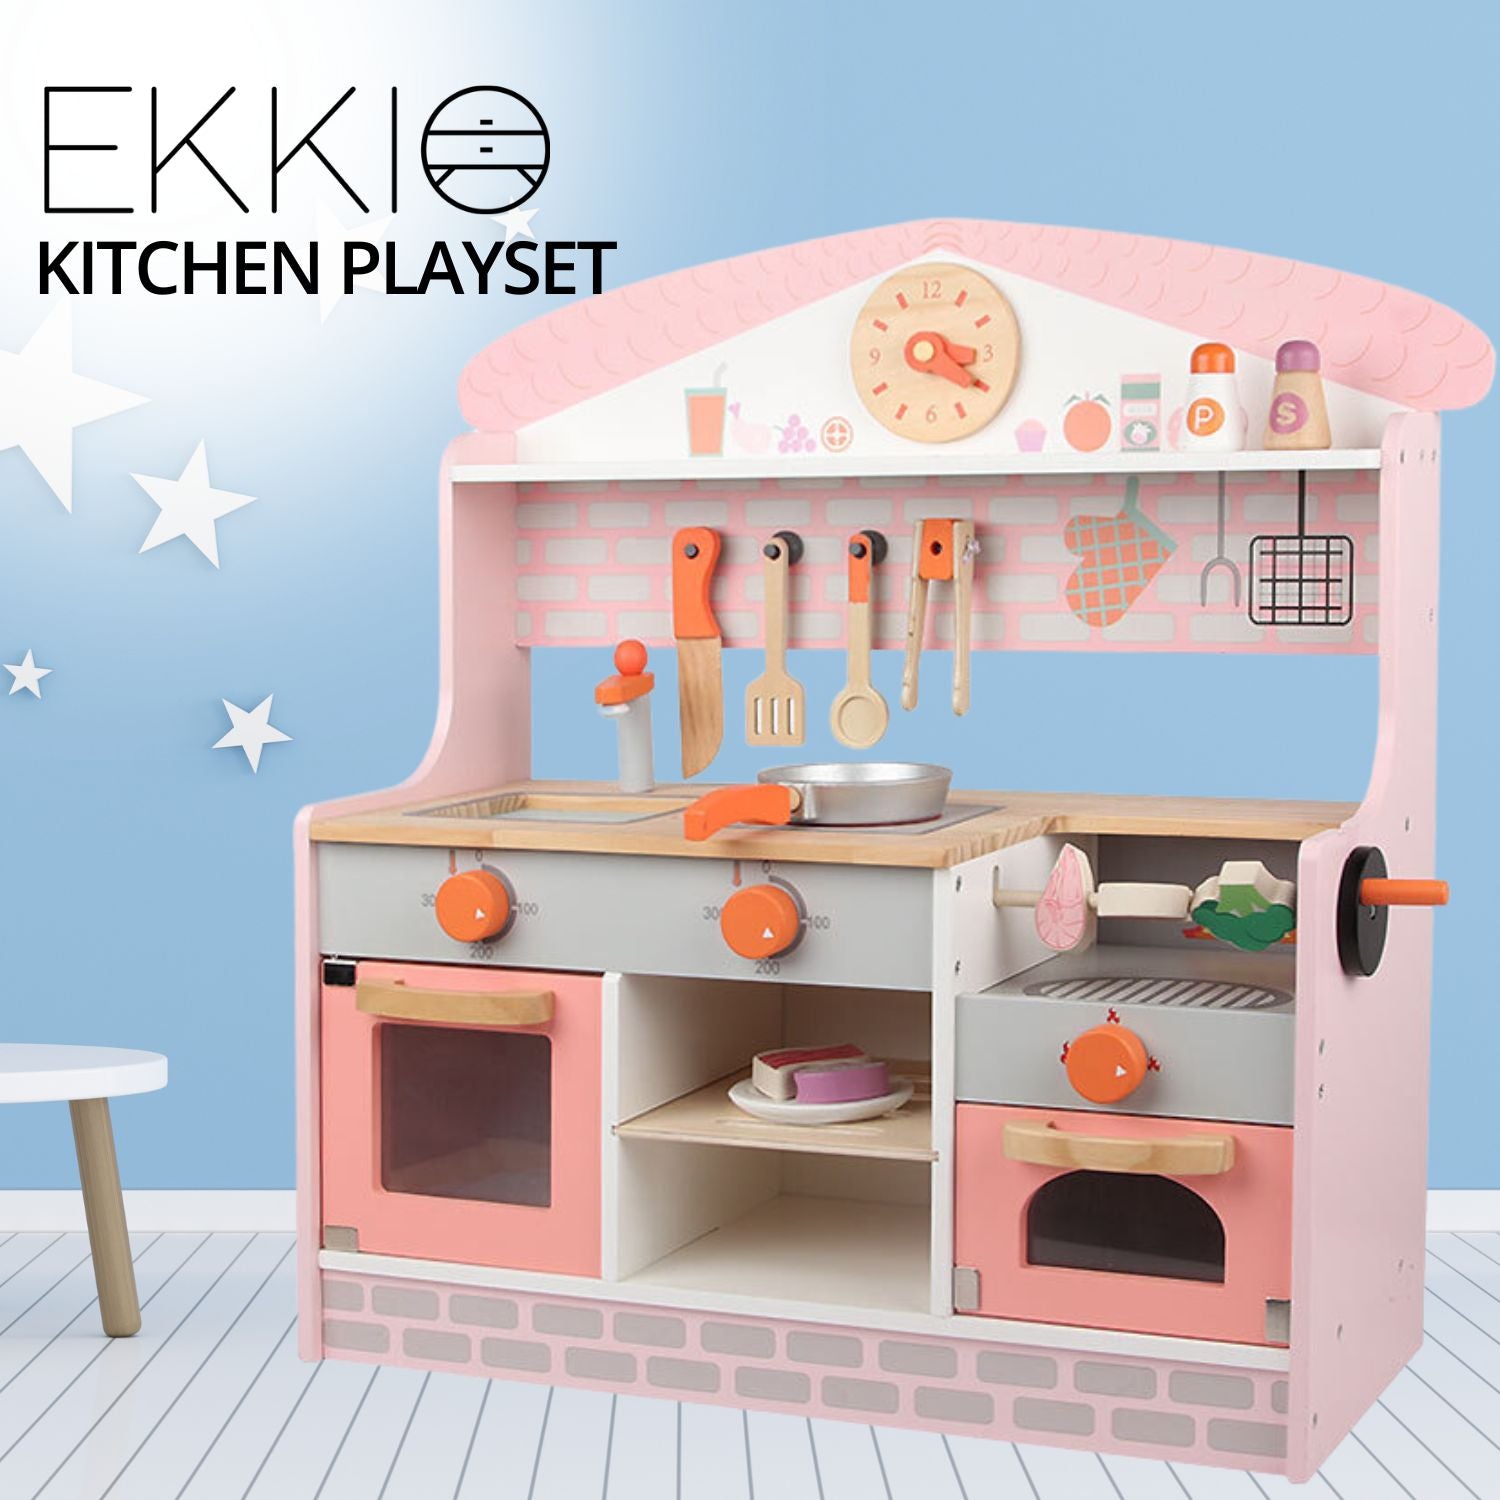 EKKIO Wooden Kitchen Playset for Kids (BBQ Kitchen Set)